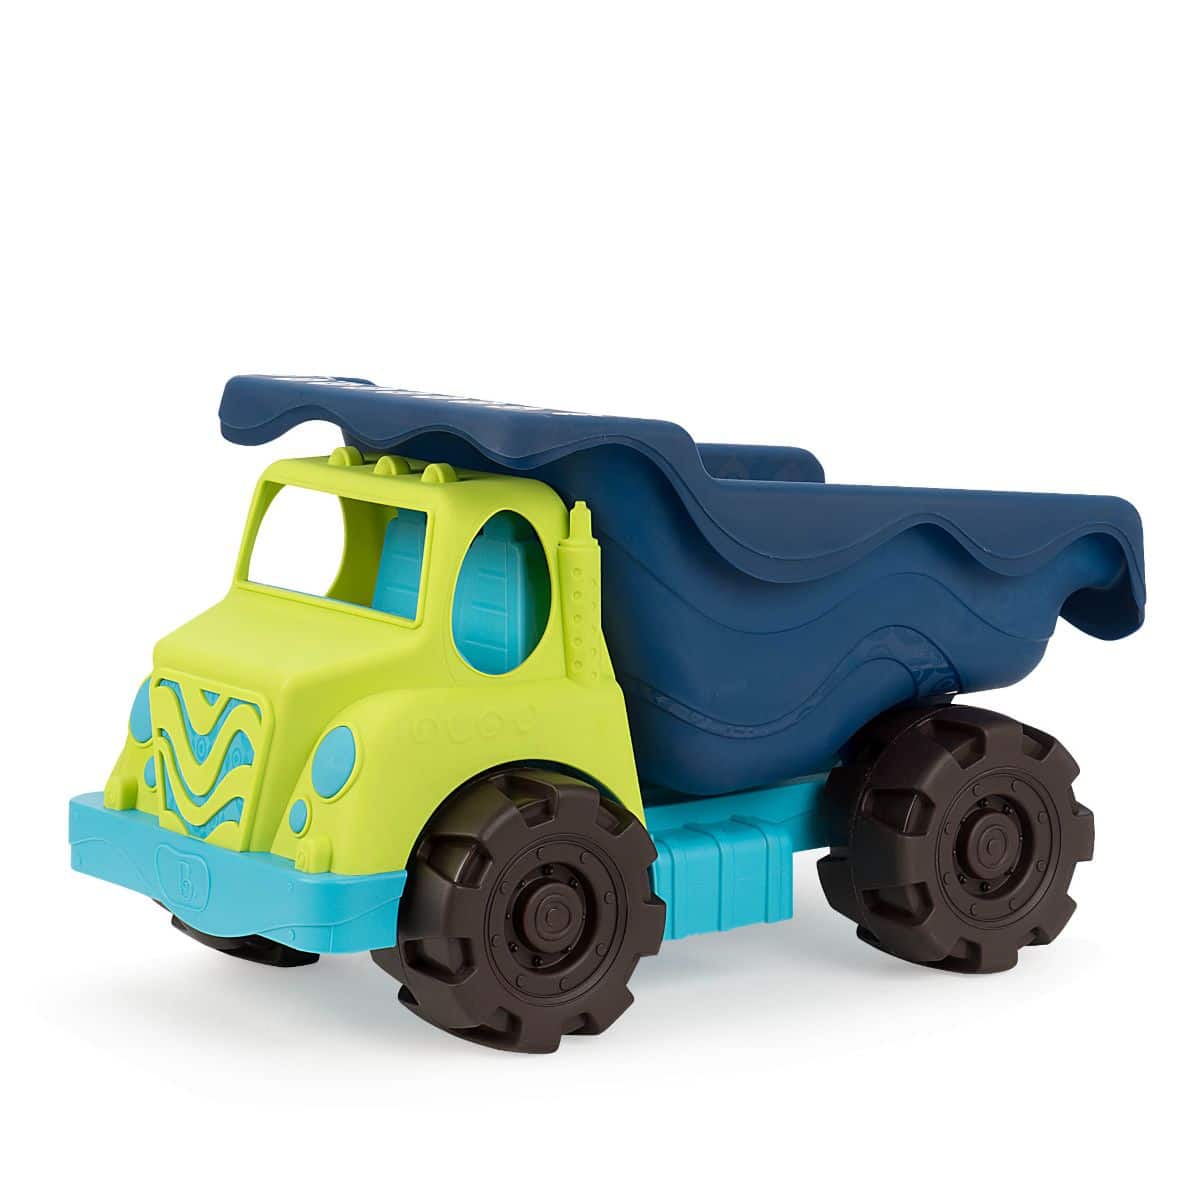 Toy dump truck.